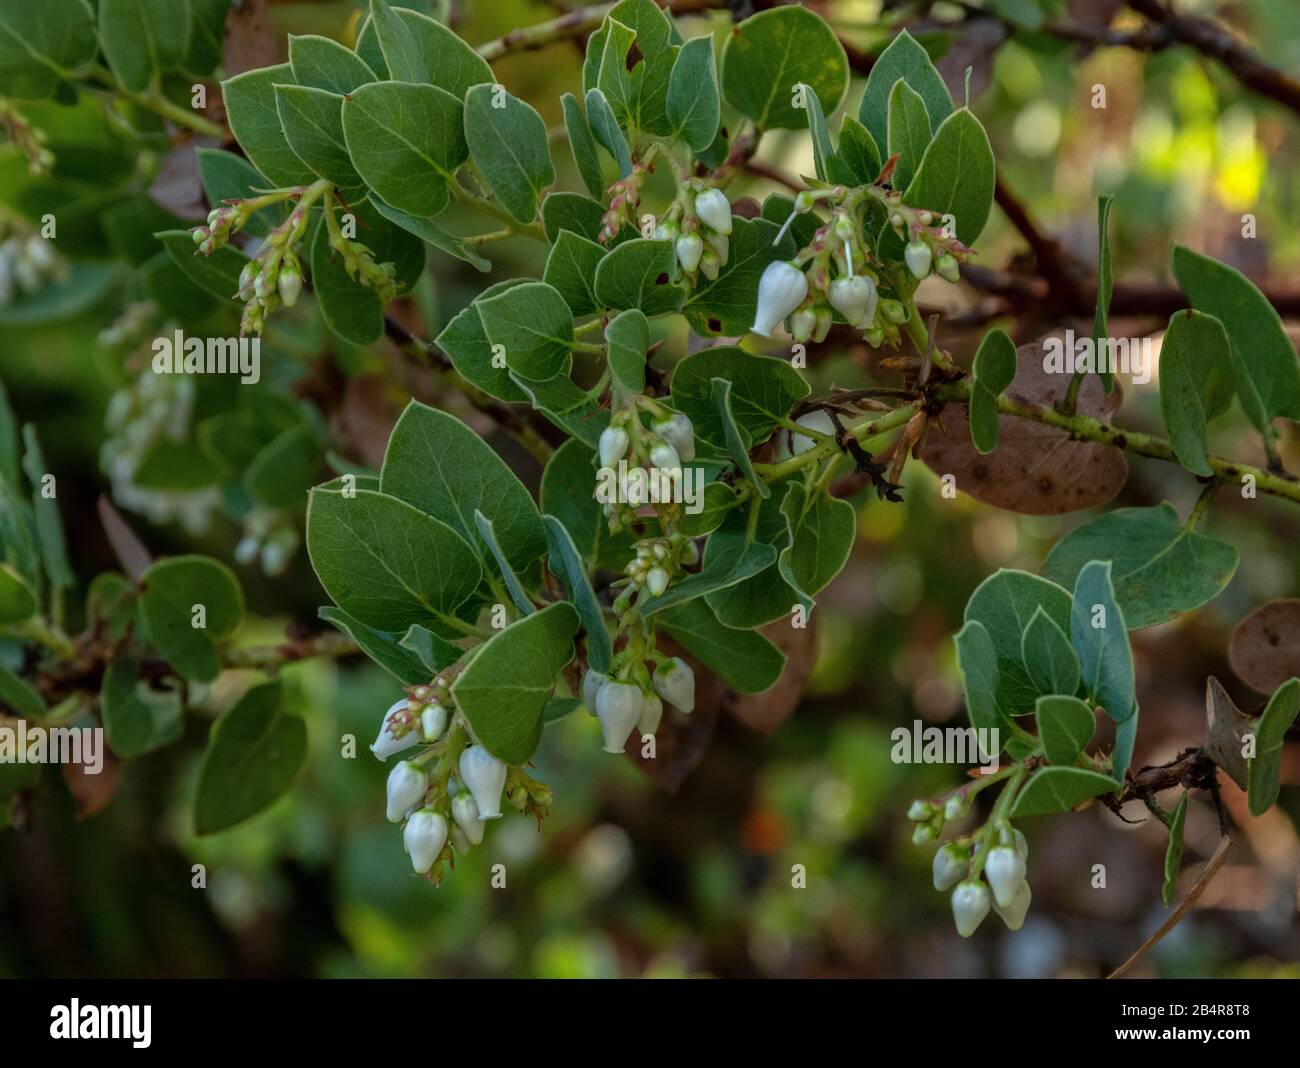 Bigberry Manzanita, Arctostafilos glauca, endemico della zona di Santa Barbara, California. Foto Stock